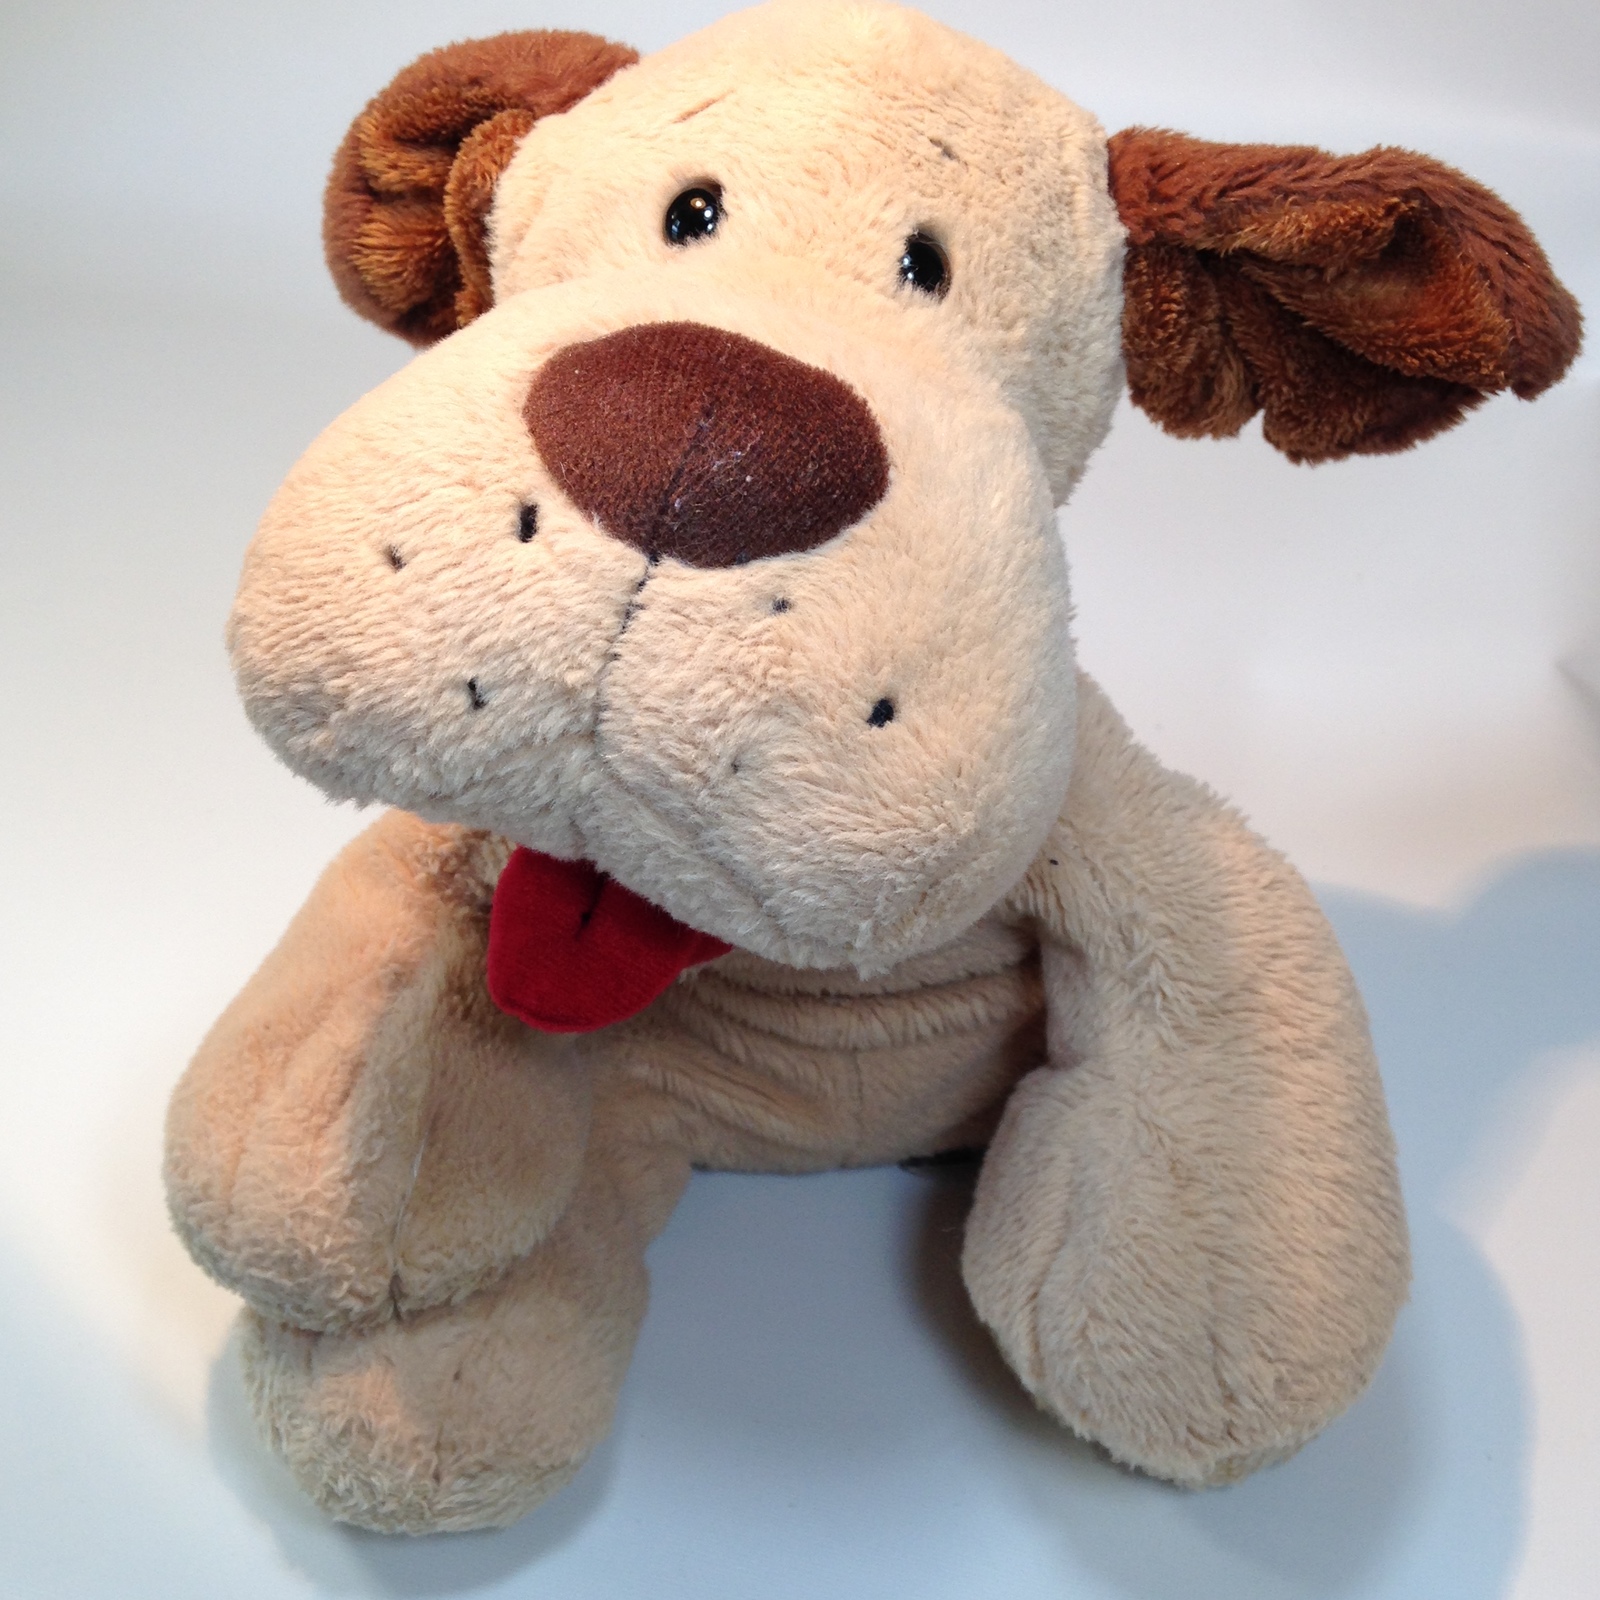 GANZ Webkinz Collie White & Brown Plush Dog Lassie Toy no code